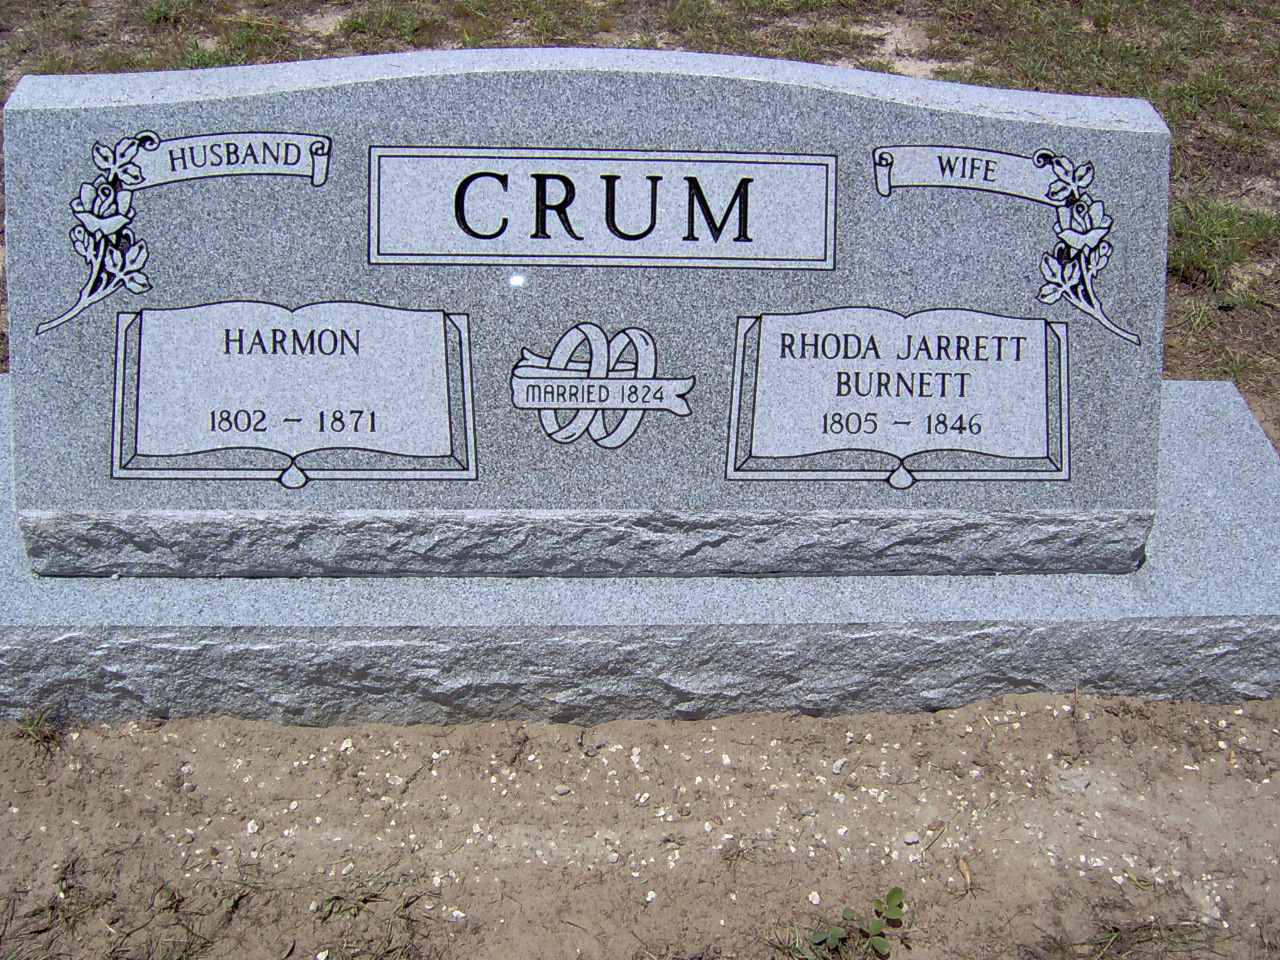 Headstone for Crum, Rhoda Jarrett Burnett